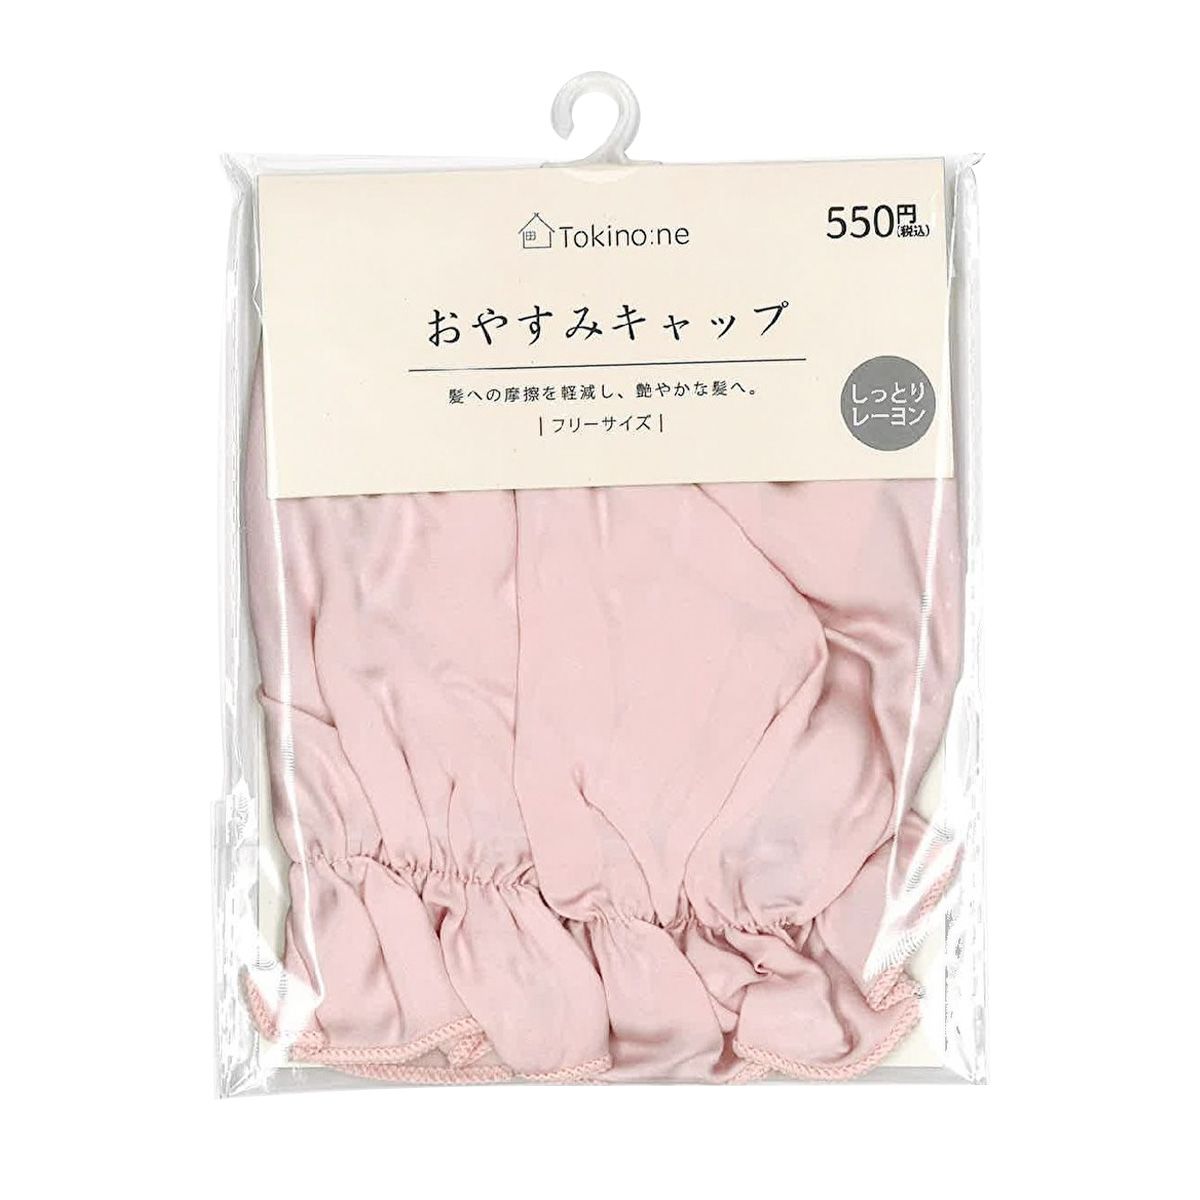 【OUTLET】ナイトキャップ ヘアキャップ レーヨン製Tokinone PB.おやすみキャップ ピンク フリーサイズ　058285